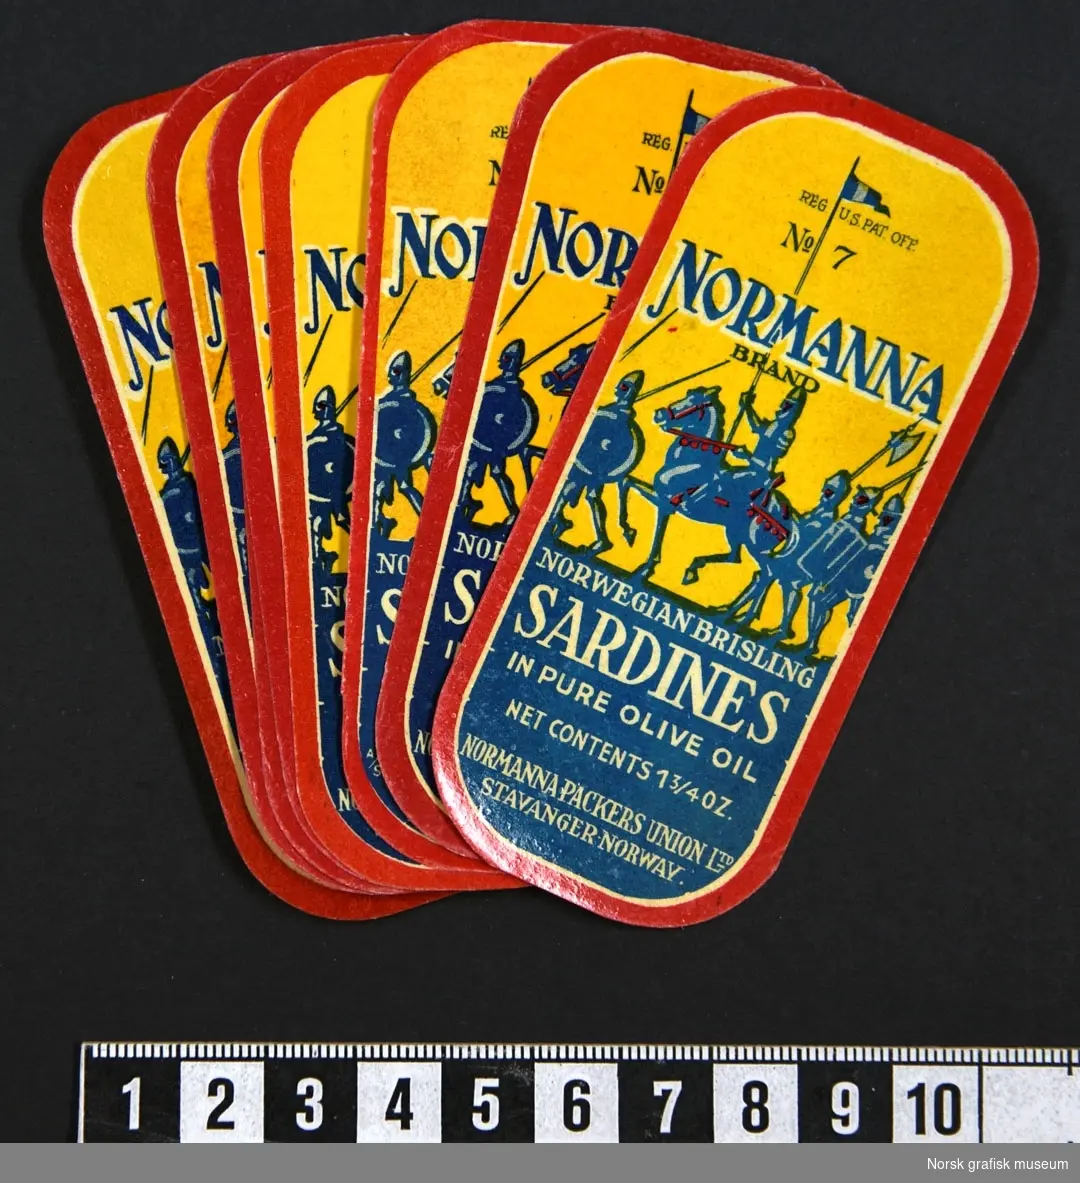 Små etiketter i blått, rødt og gult. Fremstilling av riddere bak teksten. 

"Norwegian brisling sardines in pure olive oil"